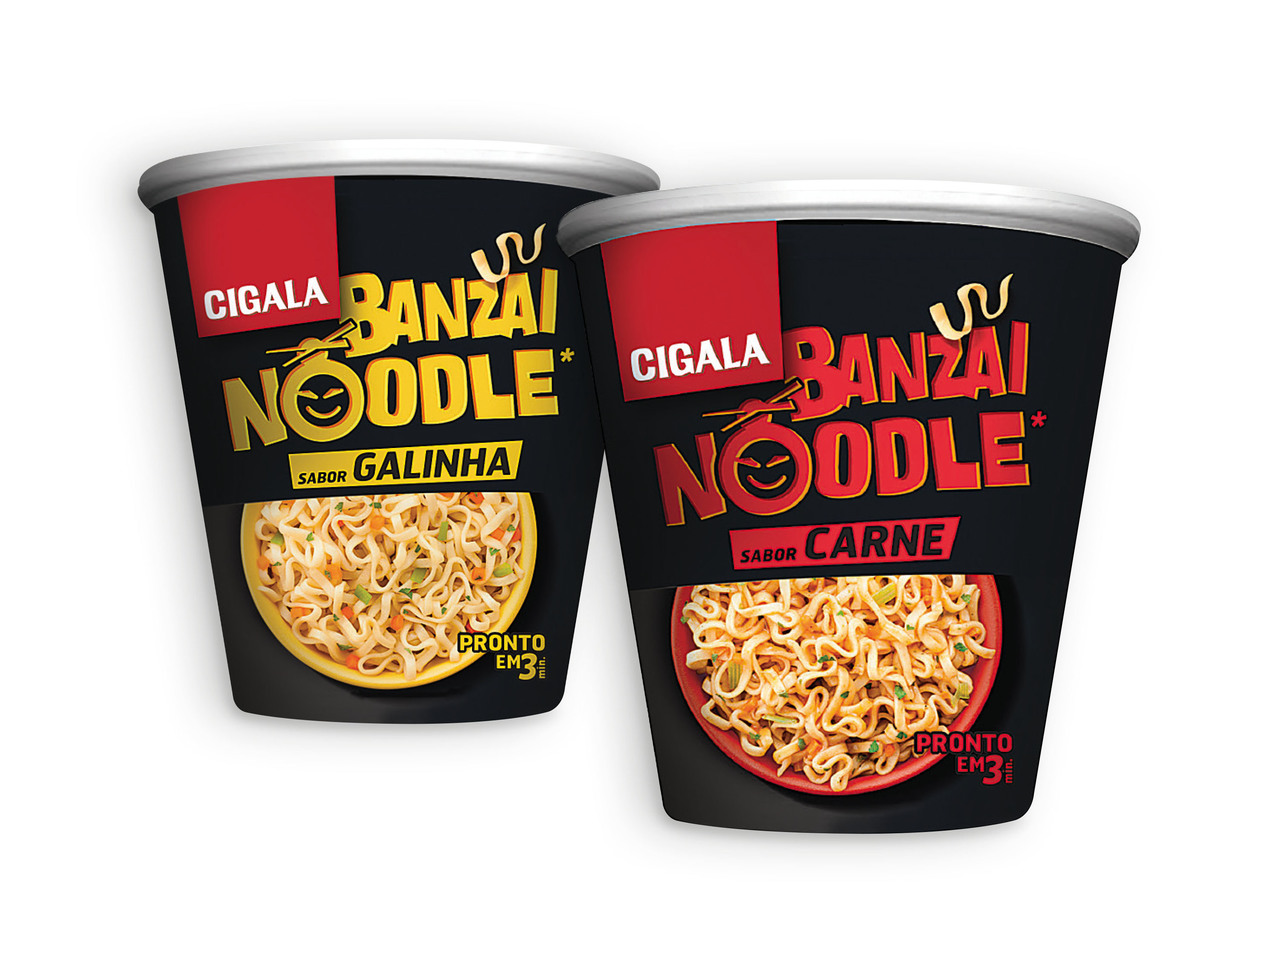 CIGALA(R) Noodles Banzai